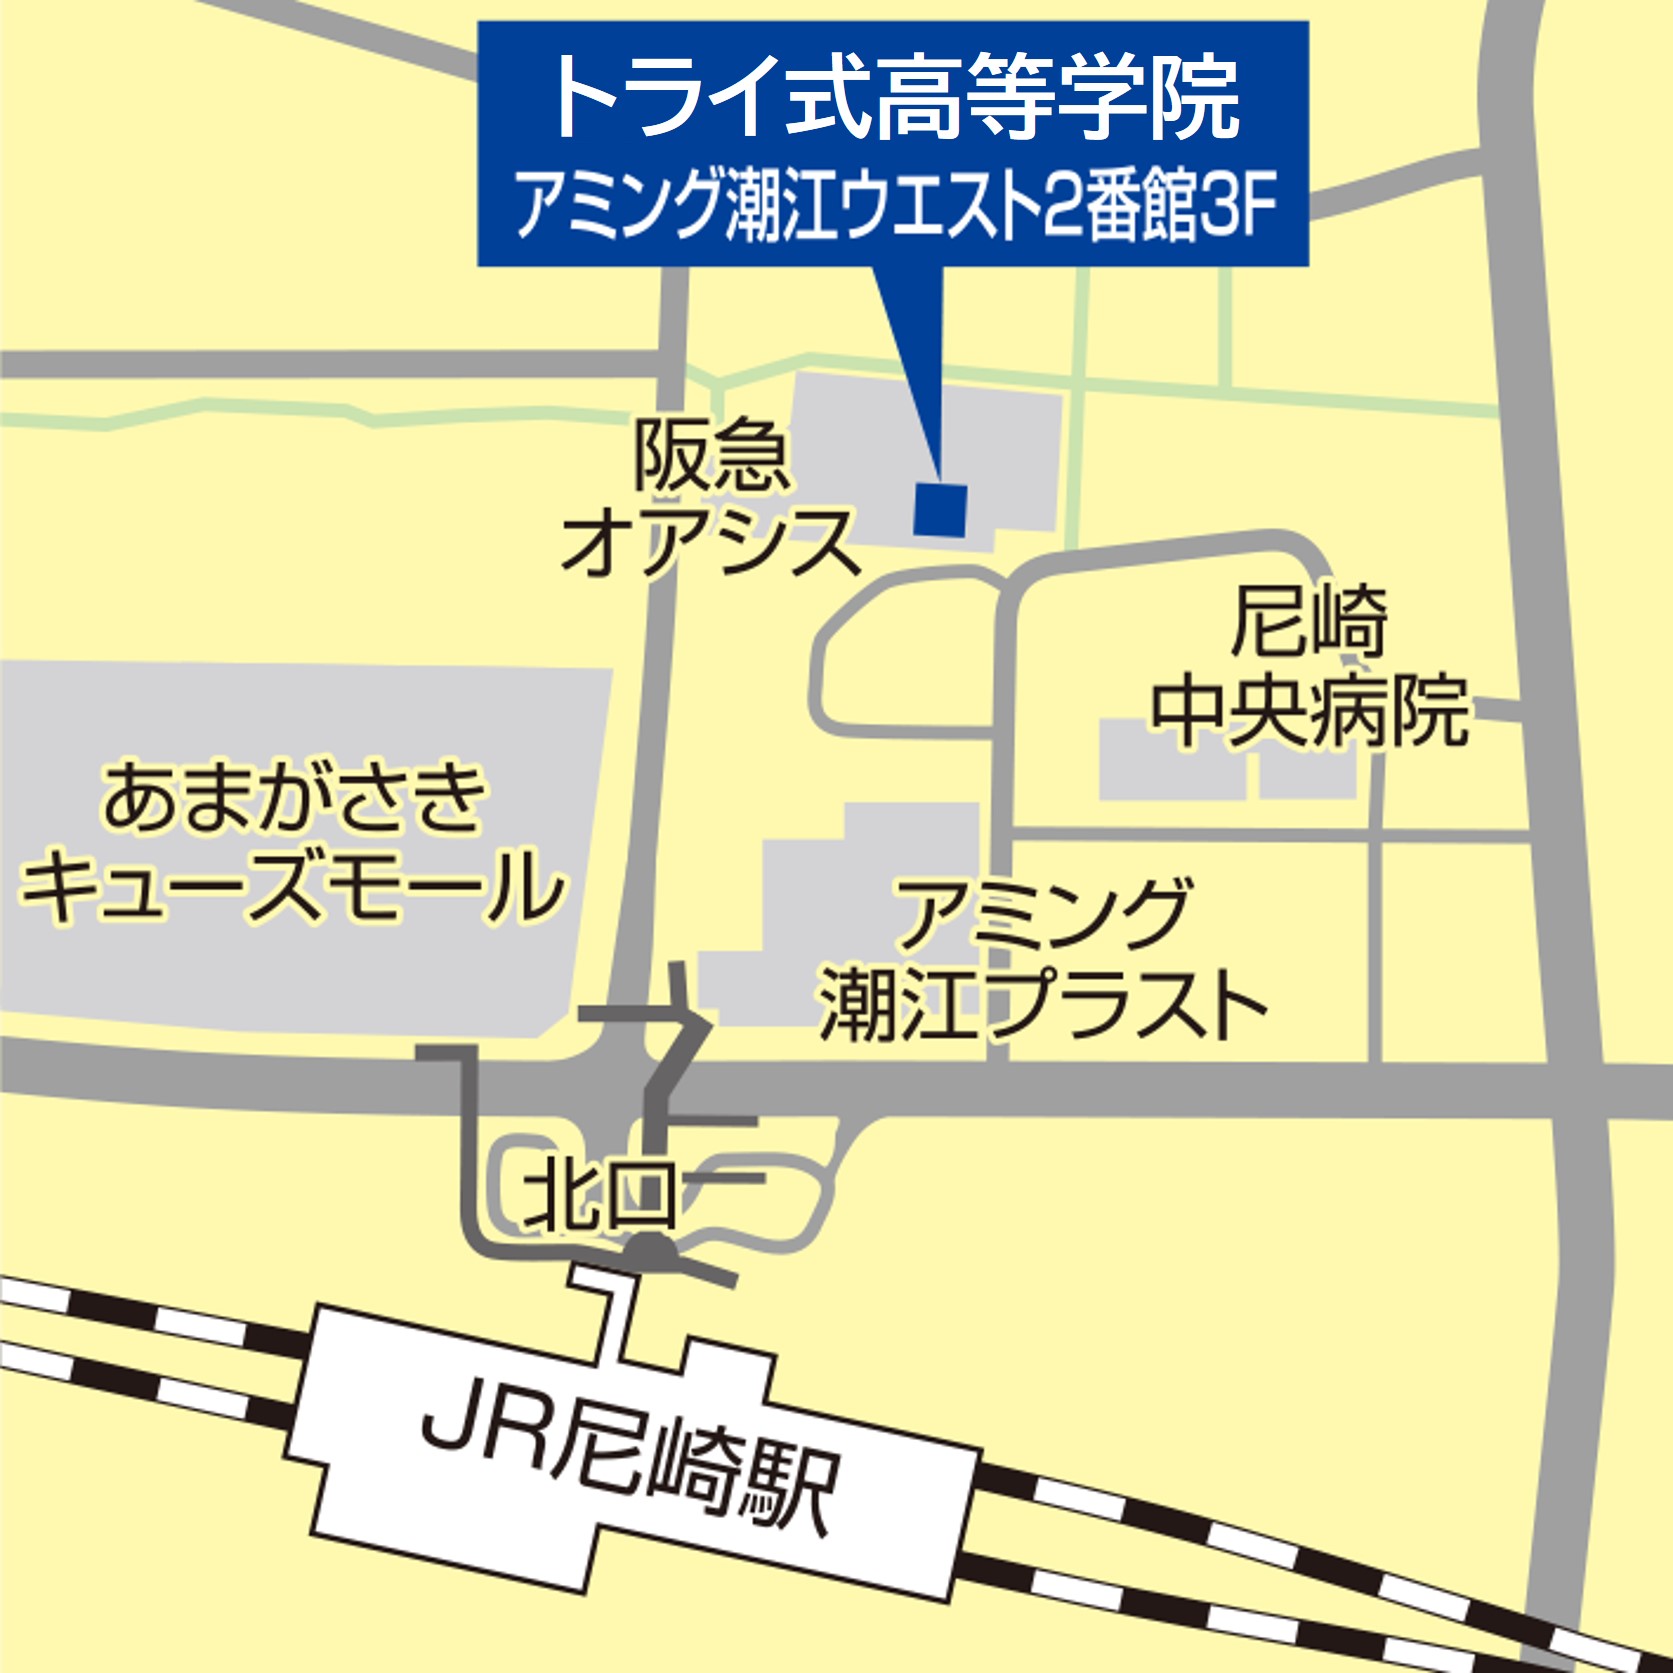 尼崎の地図